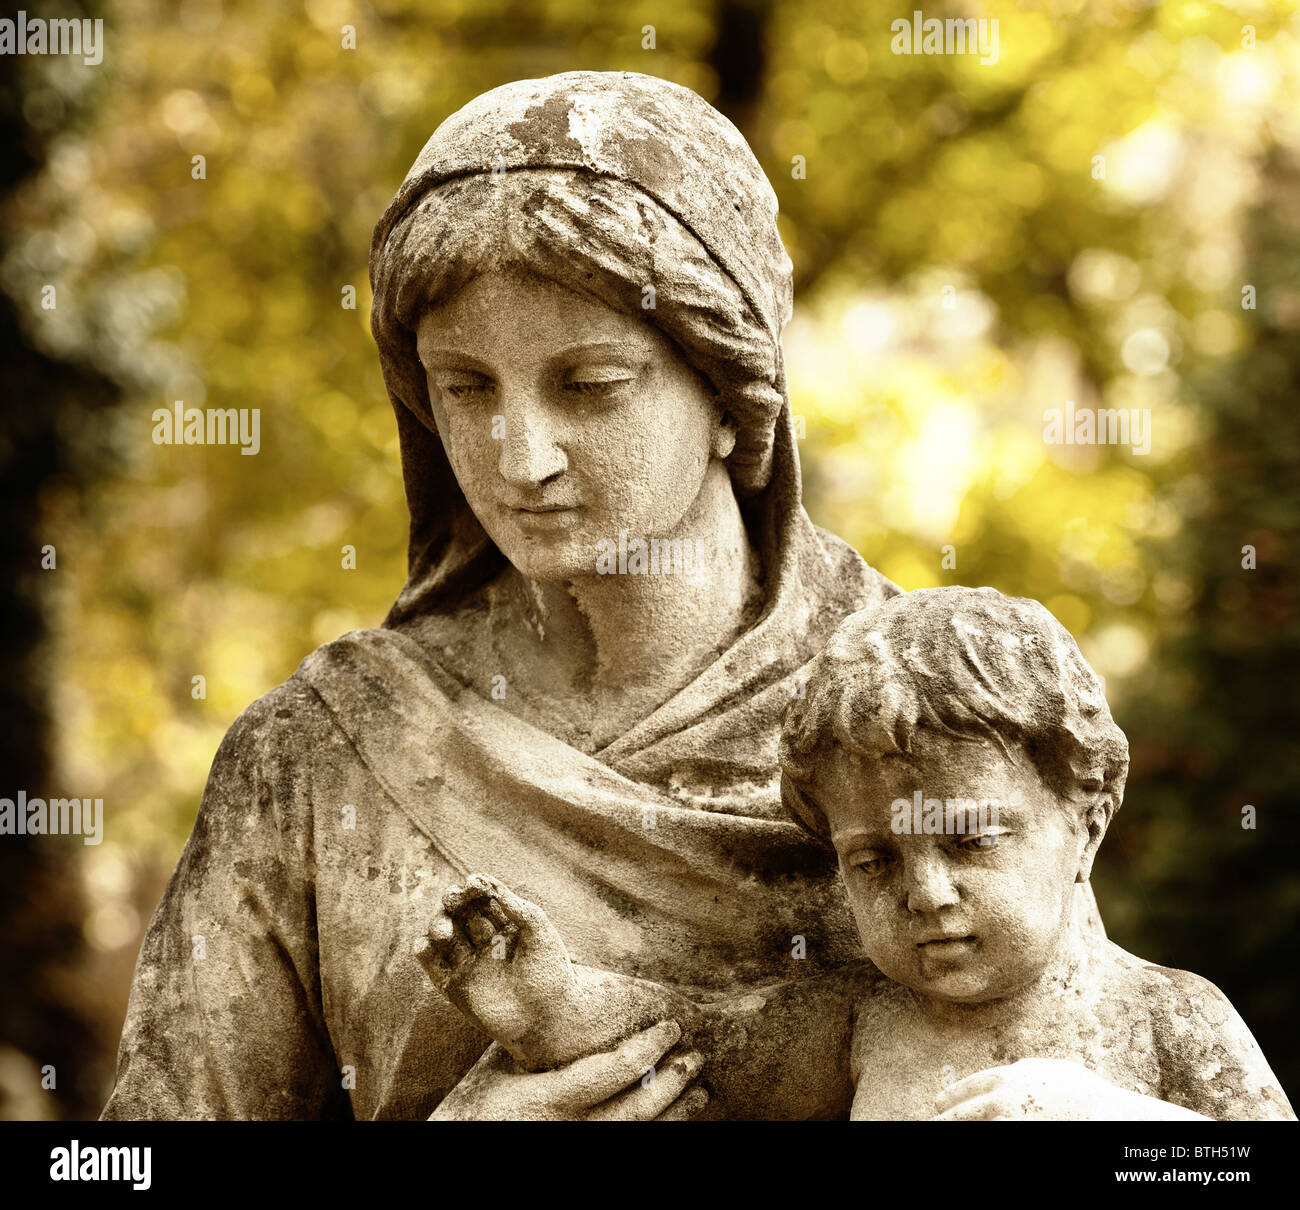 Monument de la femme avec l'enfant sur un cimetière. Depuis sa création en 1787 Cimetière Lychakiv Lvov, Ukraine Banque D'Images